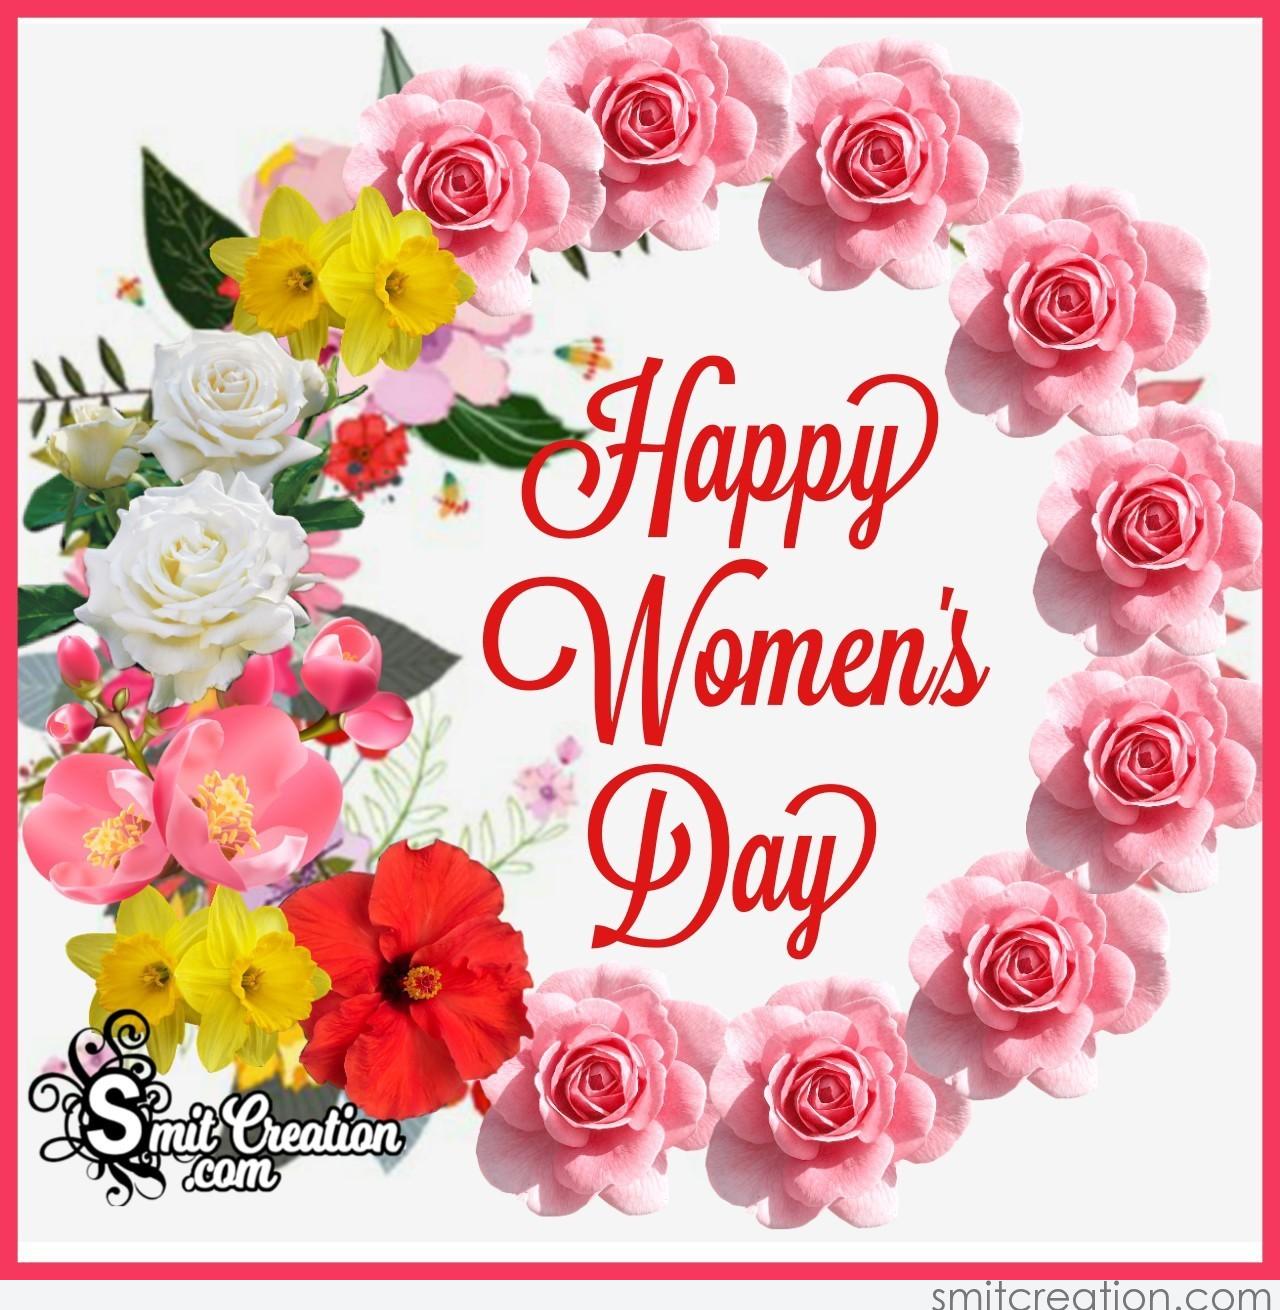 Happy Women's Day card With Flower Wreath - SmitCreation.com